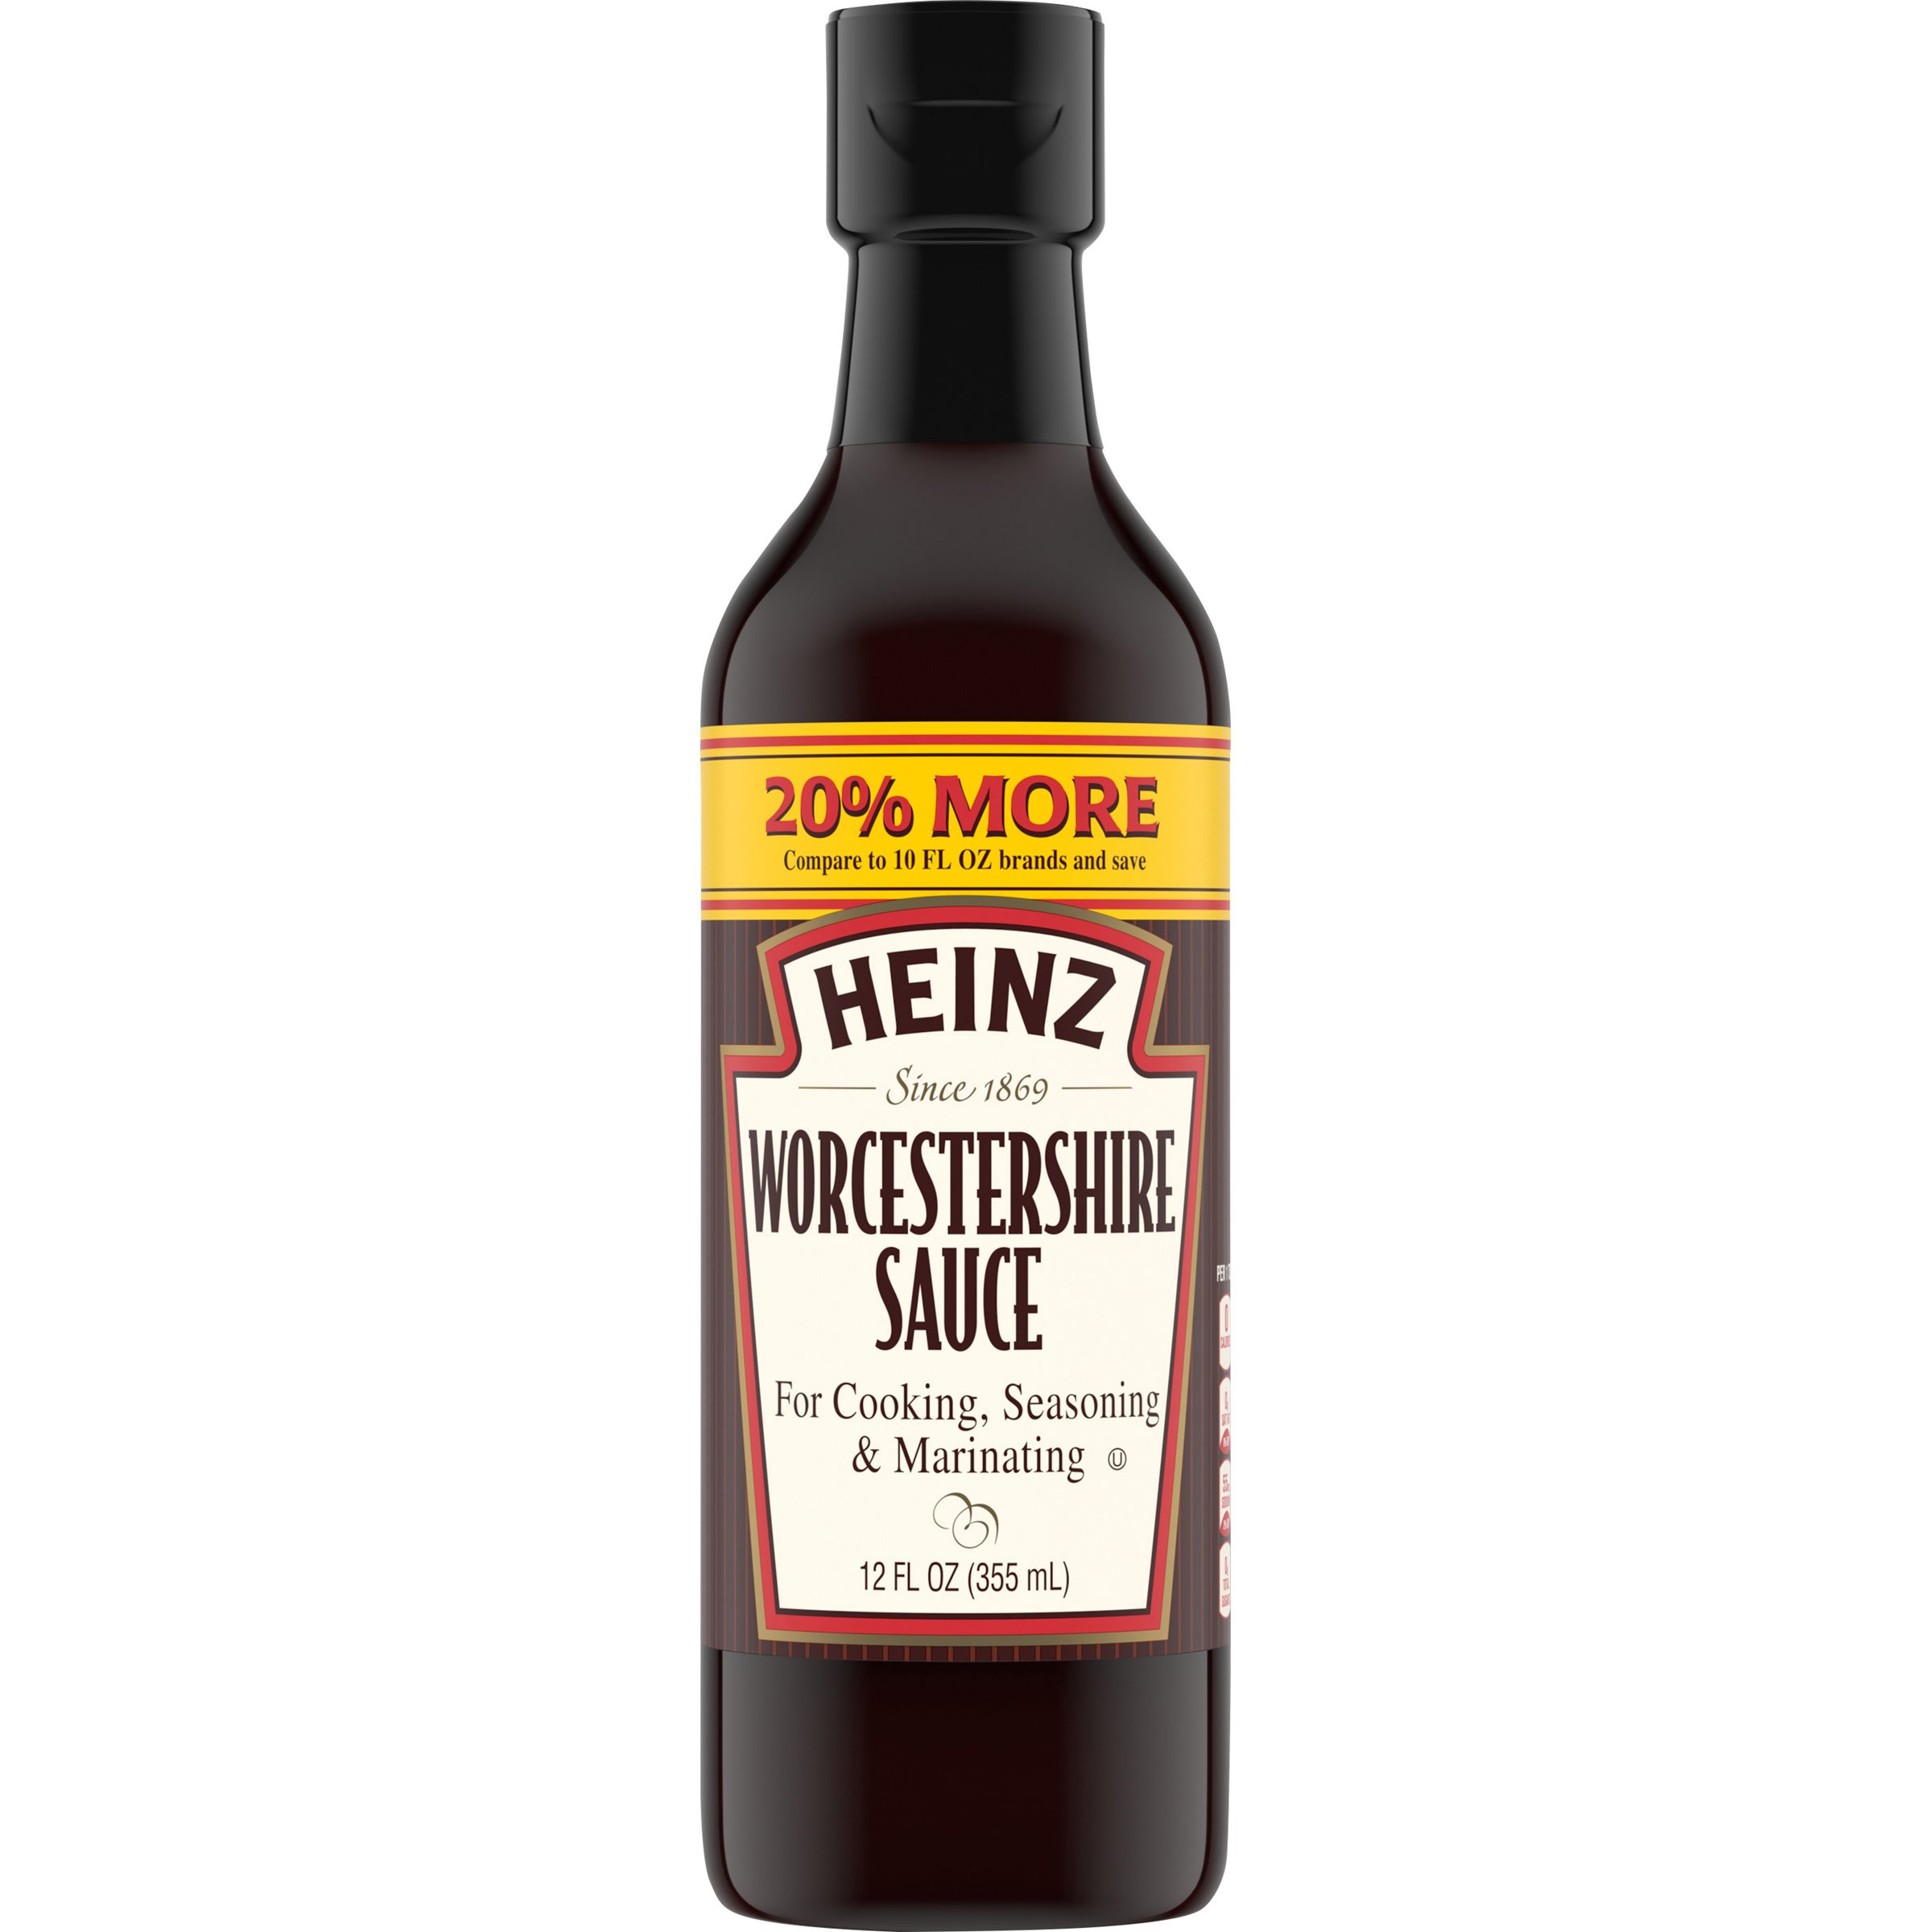 Heinz Worcestershire Sauce 12 fl oz Bottle